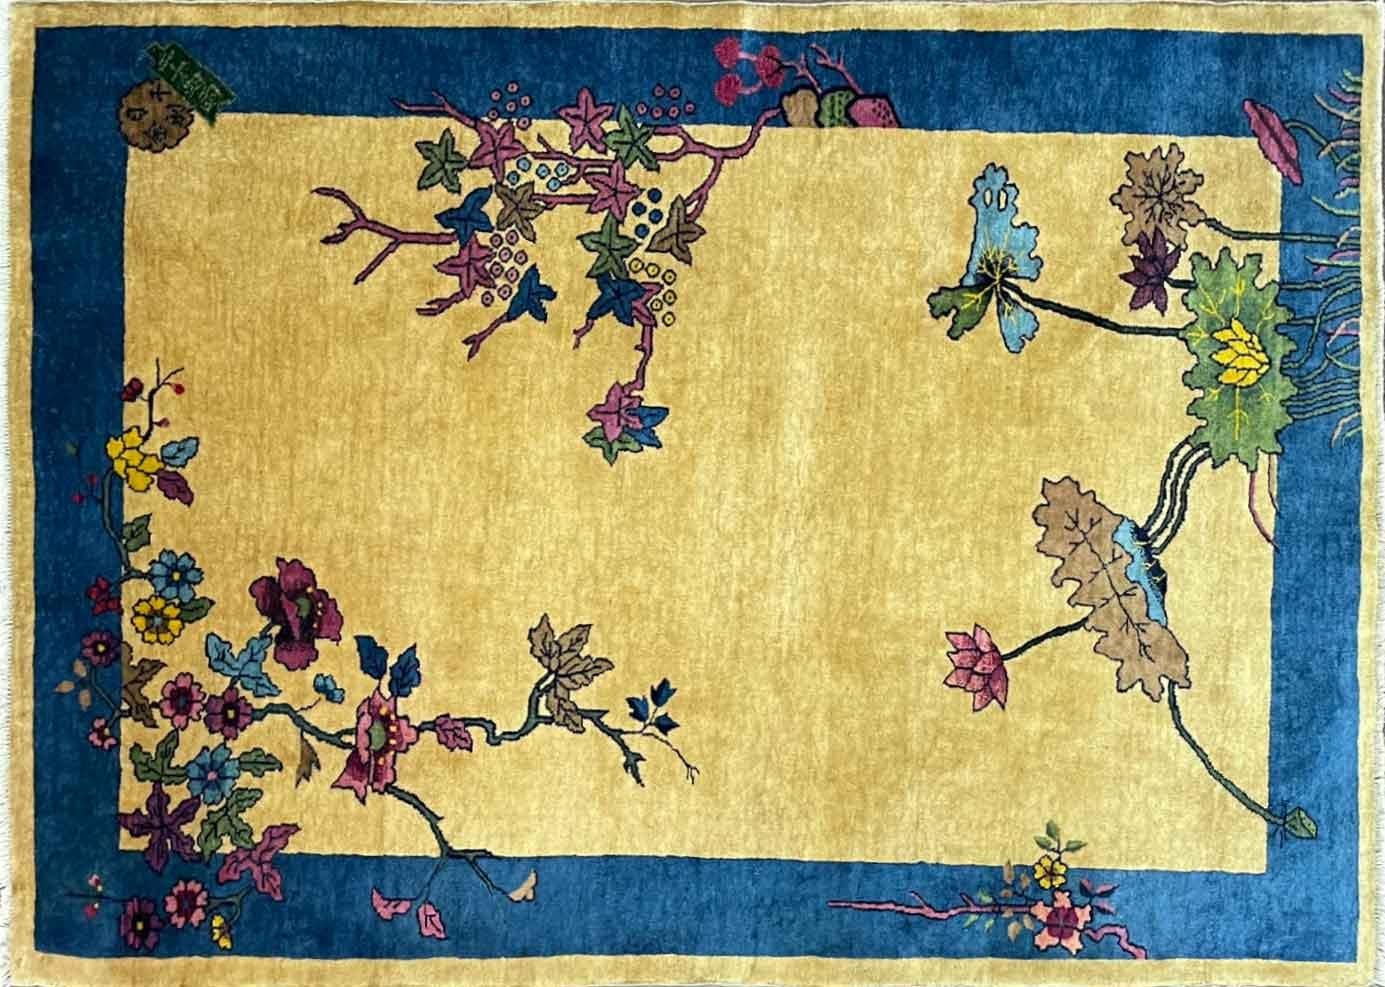 Tauchen Sie ein in die zauberhafte Welt der zeitlosen Eleganz mit unserem exquisiten Art-Déco-Teppich, einem wahren Wunderwerk aus den 1920er Jahren, das den Charme einer vergangenen Epoche verkörpert. Dieser in China sorgfältig gefertigte Teppich